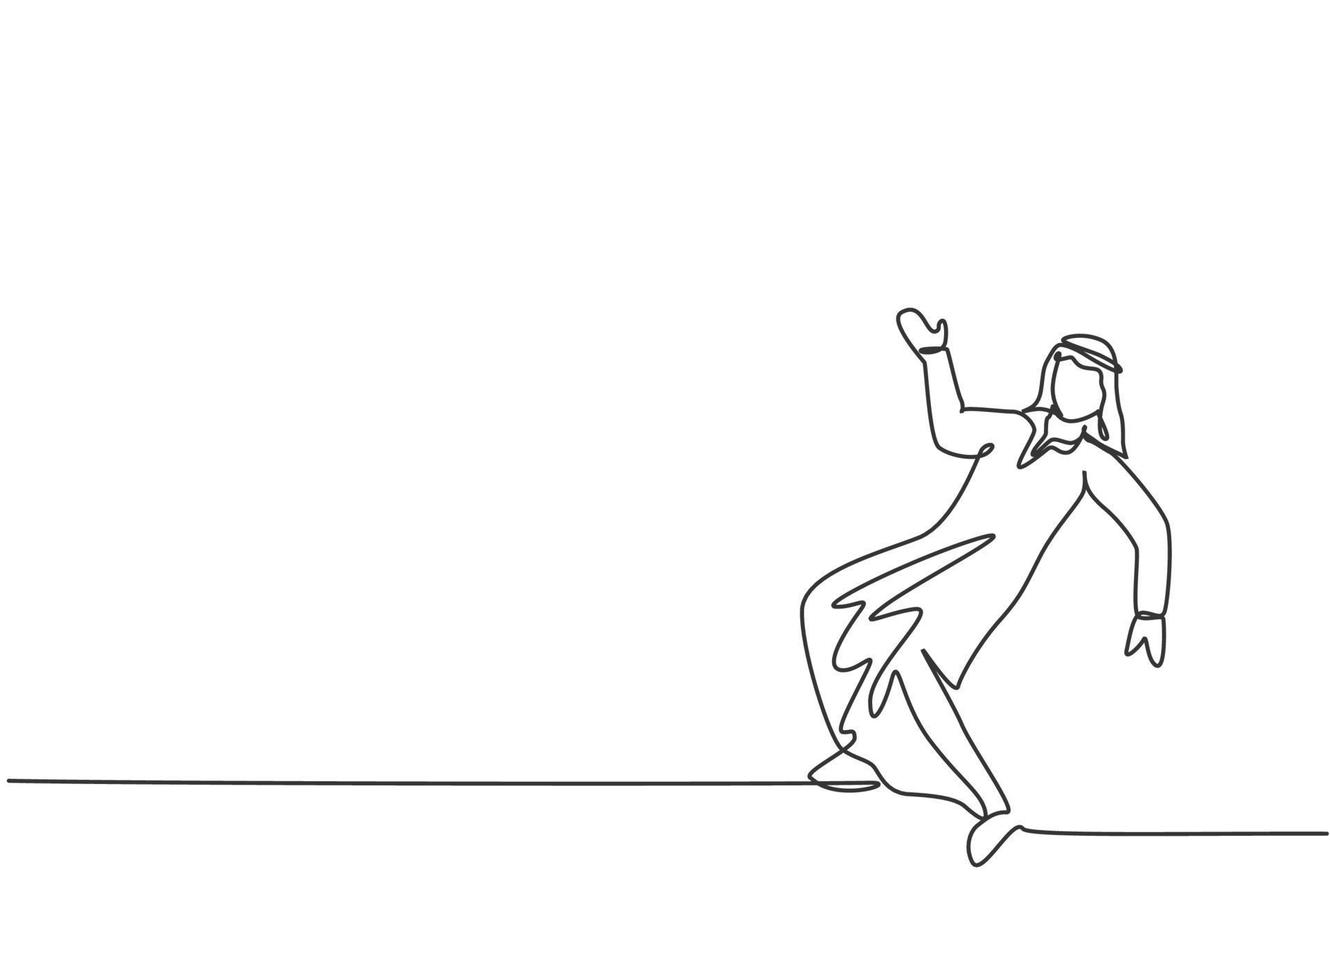 enkele lijntekening van een jonge Arabische zakenman die op straat danst. blij met zijn minimale metafoorconcept voor zakelijke uitdagingen. moderne doorlopende lijn tekenen ontwerp grafische vectorillustratie vector